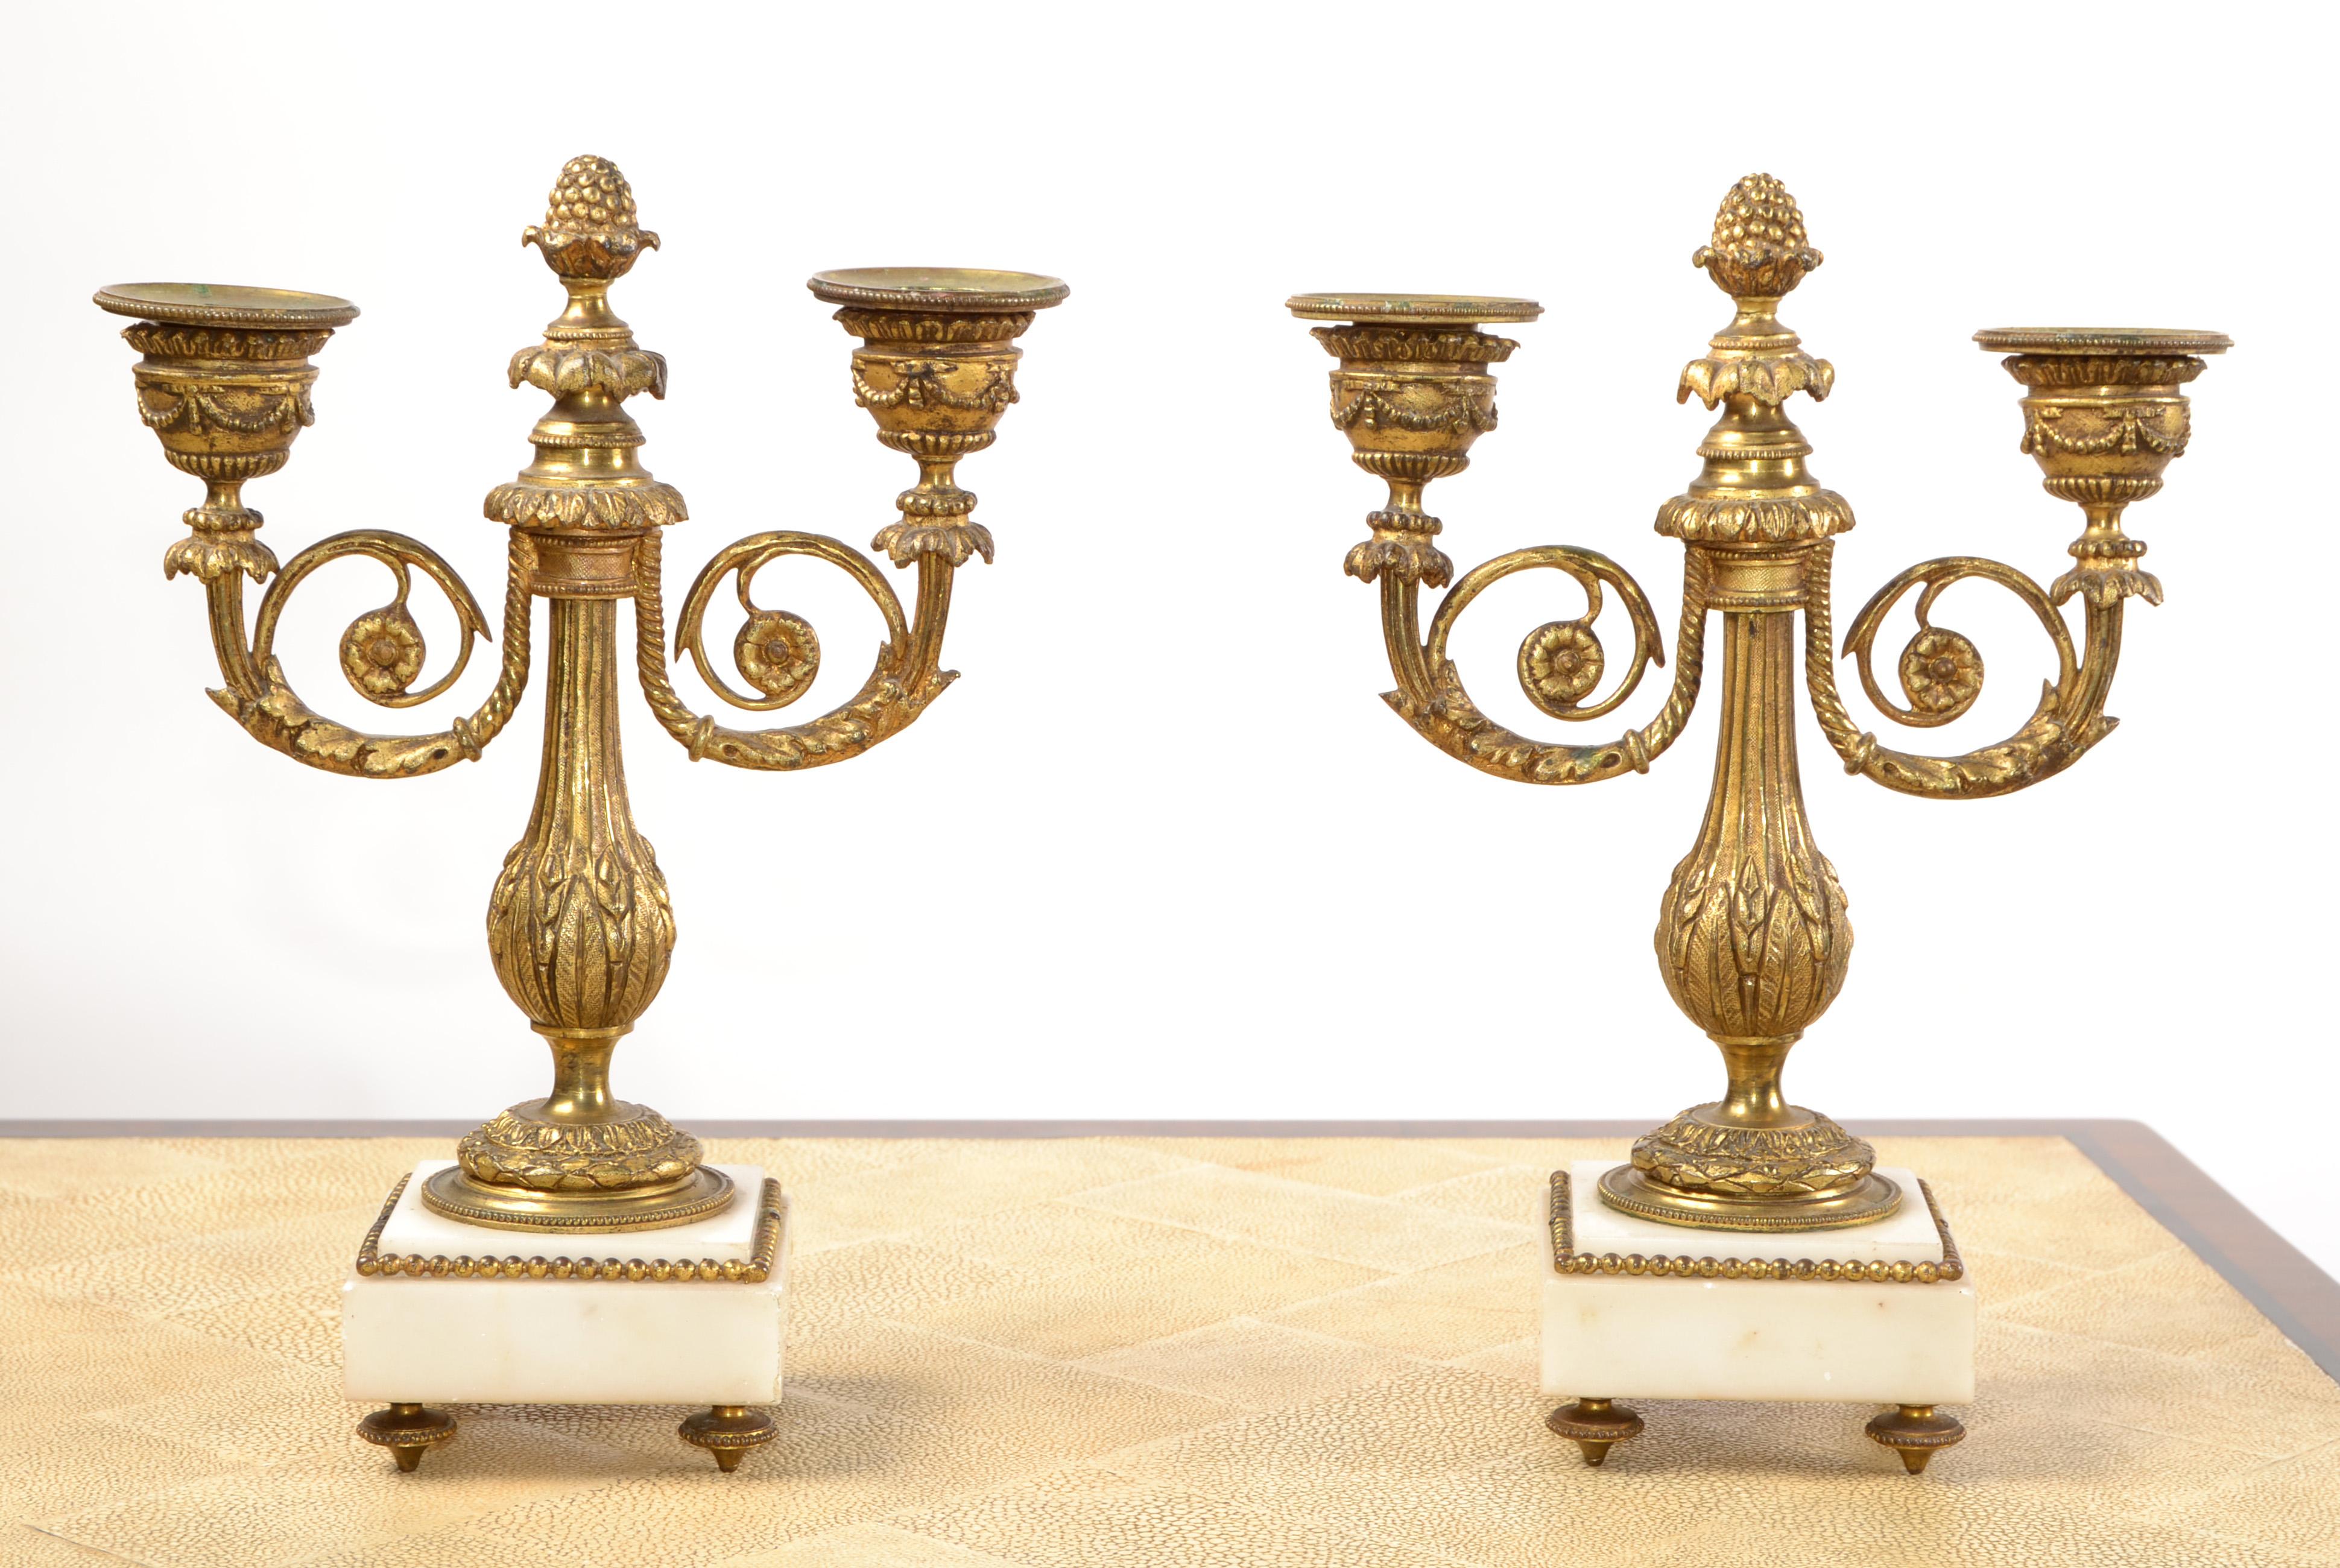 Ein Paar schwere Napoleon III vergoldeter Bronze und weißem Marmor Kerzenhalter oder Kandelaber.
Trübe aufgrund von Alter und Nutzung einige kleinere Chips auf den weißen Marmor.
Die Basis misst: 3,38 x 3,38 Zoll.